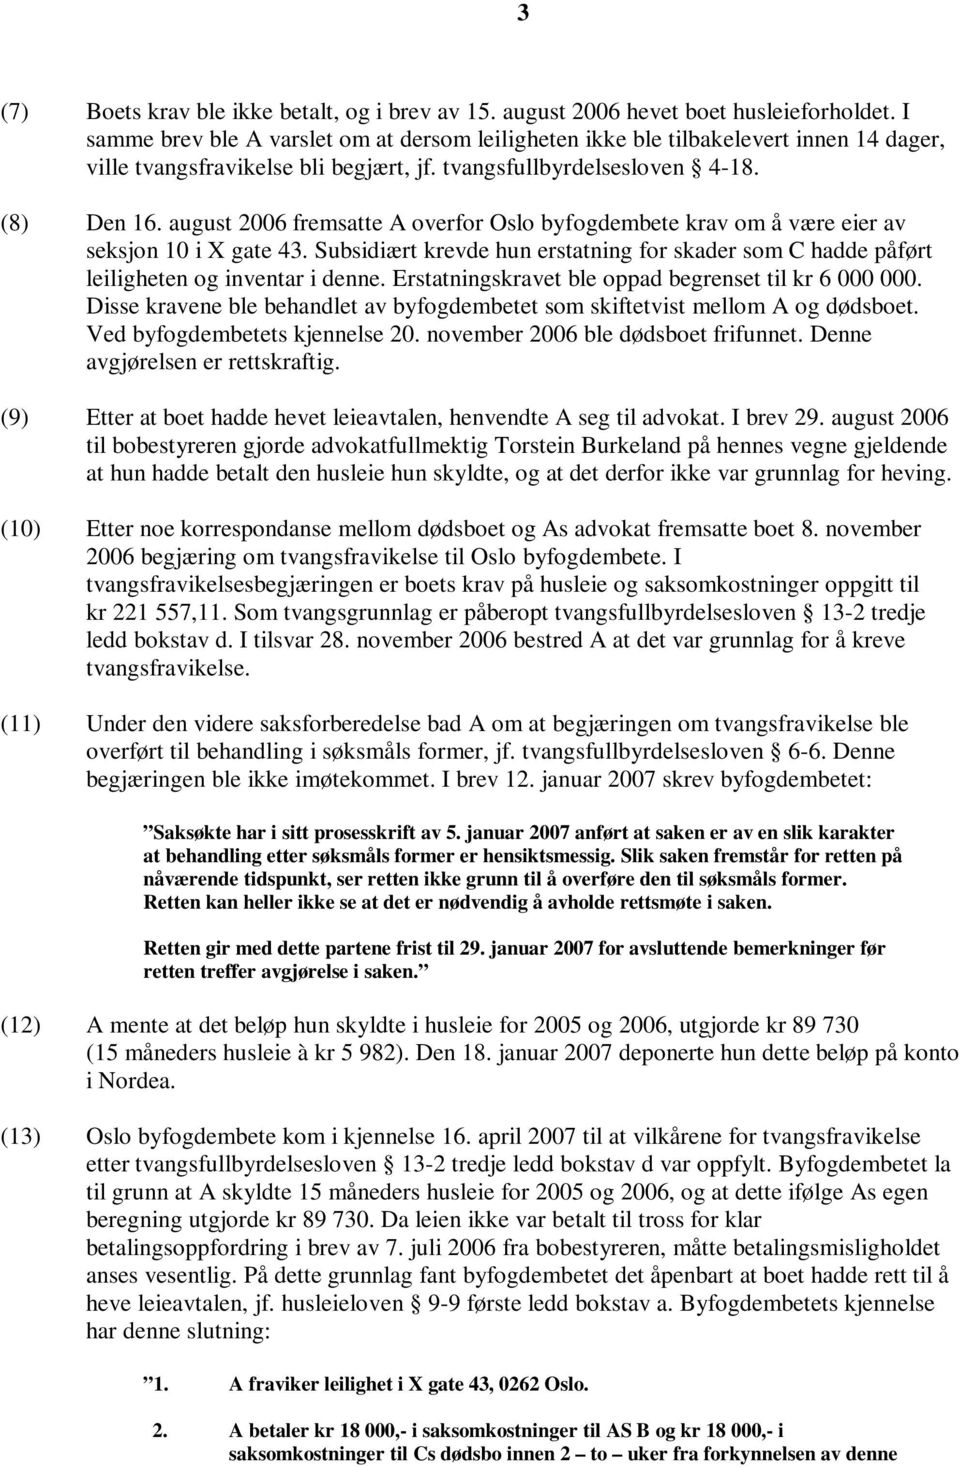 august 2006 fremsatte A overfor Oslo byfogdembete krav om å være eier av seksjon 10 i X gate 43. Subsidiært krevde hun erstatning for skader som C hadde påført leiligheten og inventar i denne.